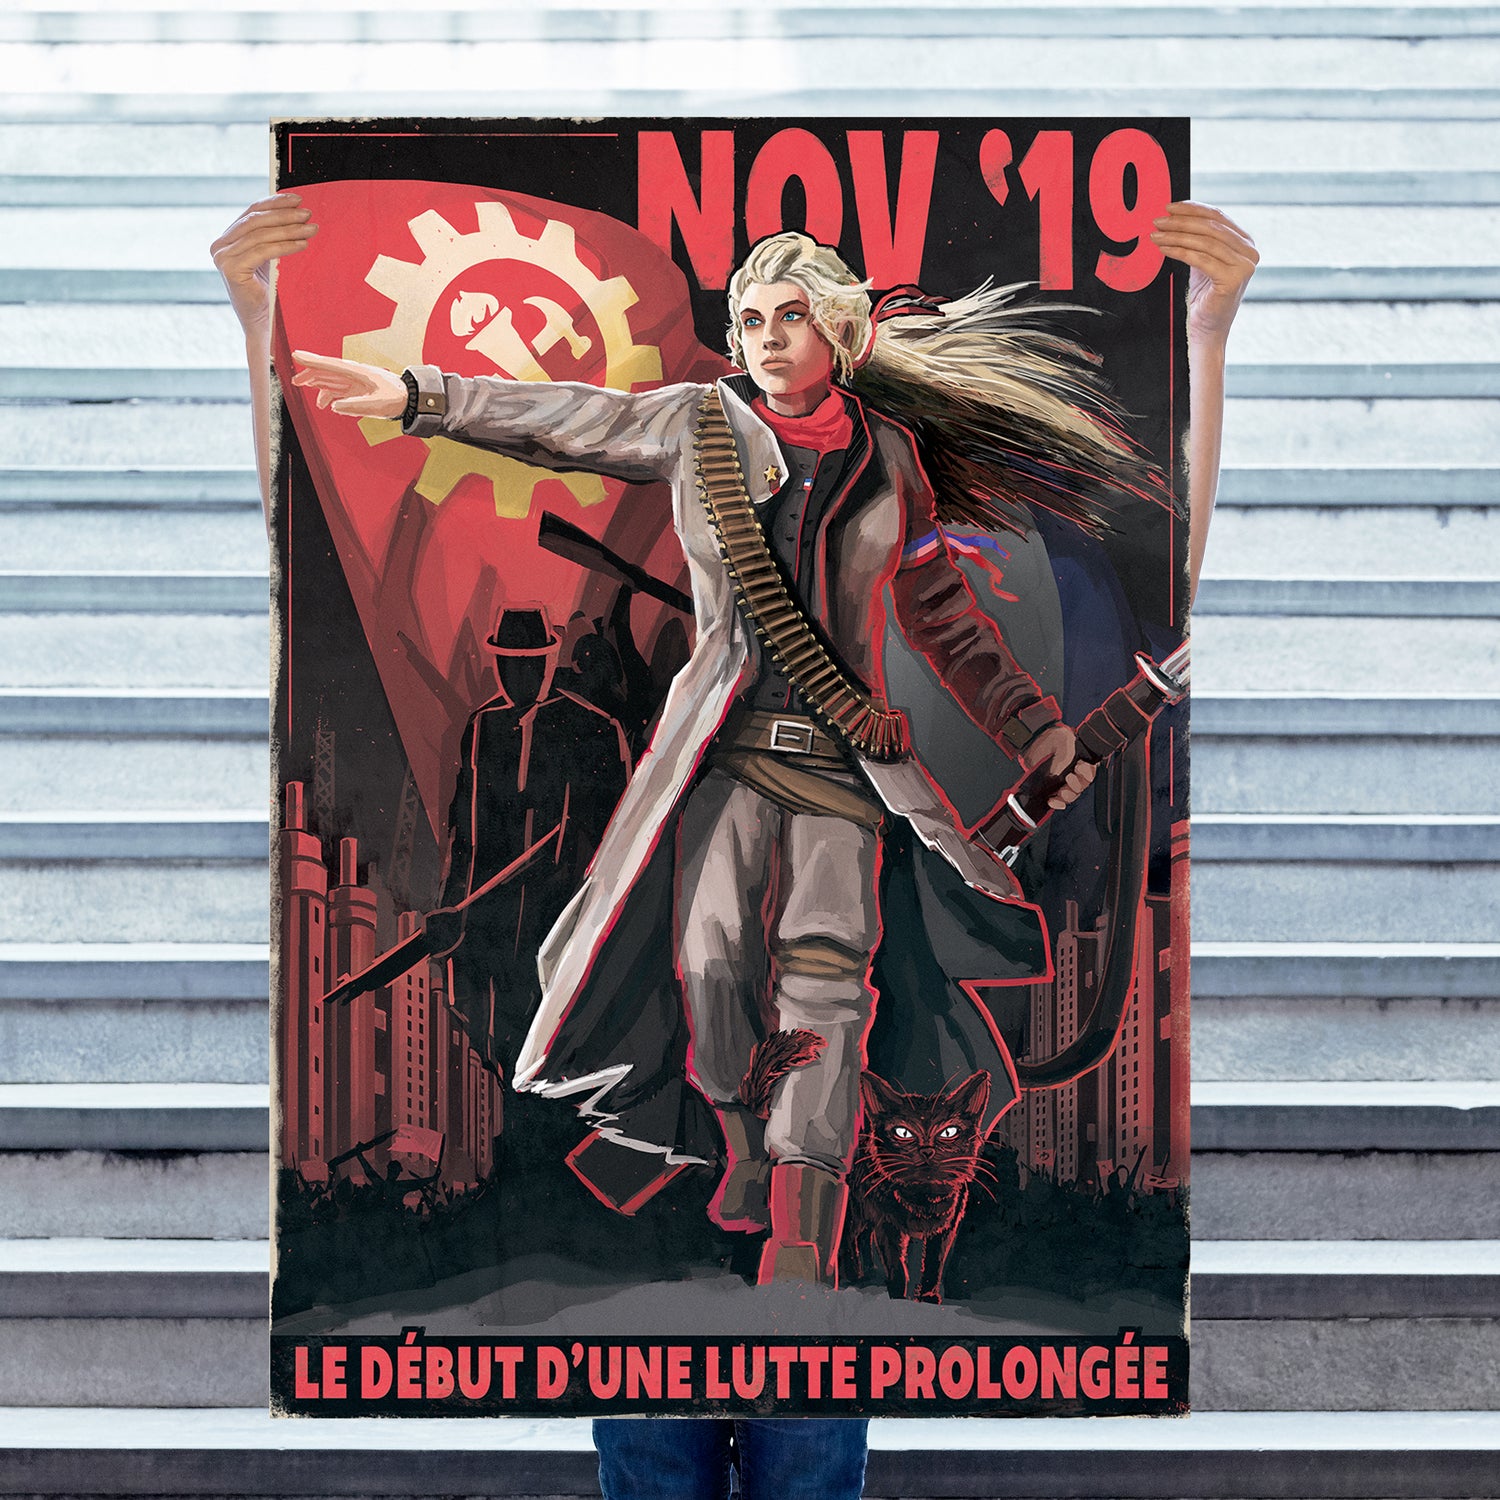 Élections de la Commune de France [Janvier 1936] Layer-1_1024x1024@2x